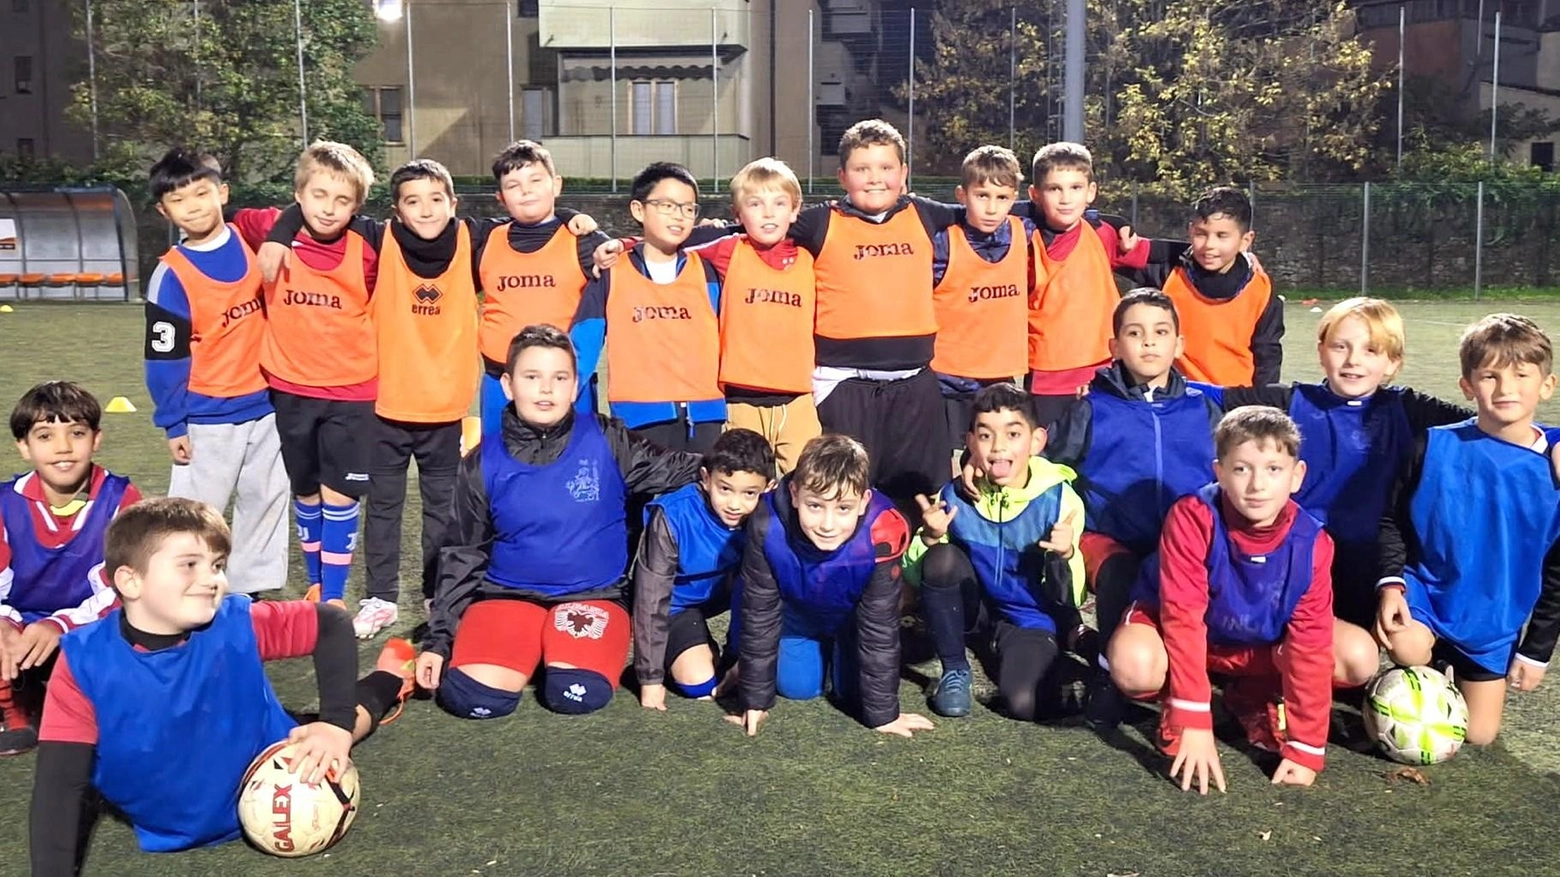 Il Gruppo Sportivo Avanguardia 1953 di Pistoia unisce tradizione e innovazione con successo nel calcio giovanile. Campagna di reclutamento, social attivi e torneo celebrativo in corso.